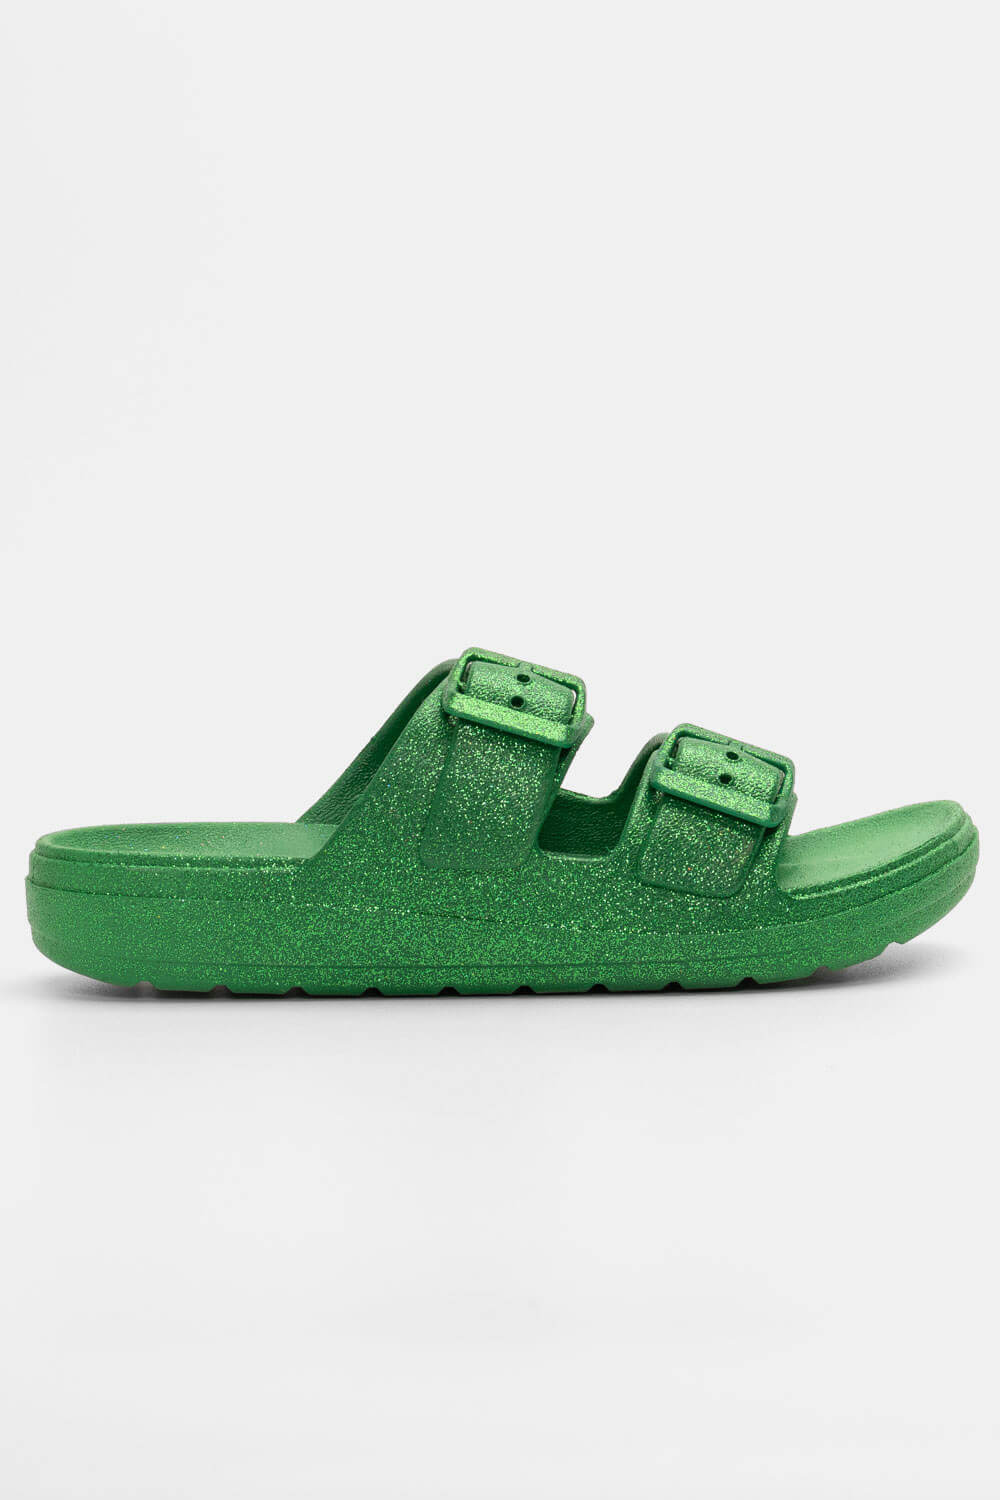 Παντόφλες με Δύο Τόκες & Glitter - Πράσινο ΠΑΠΟΥΤΣΙΑ > Jelly Shoes